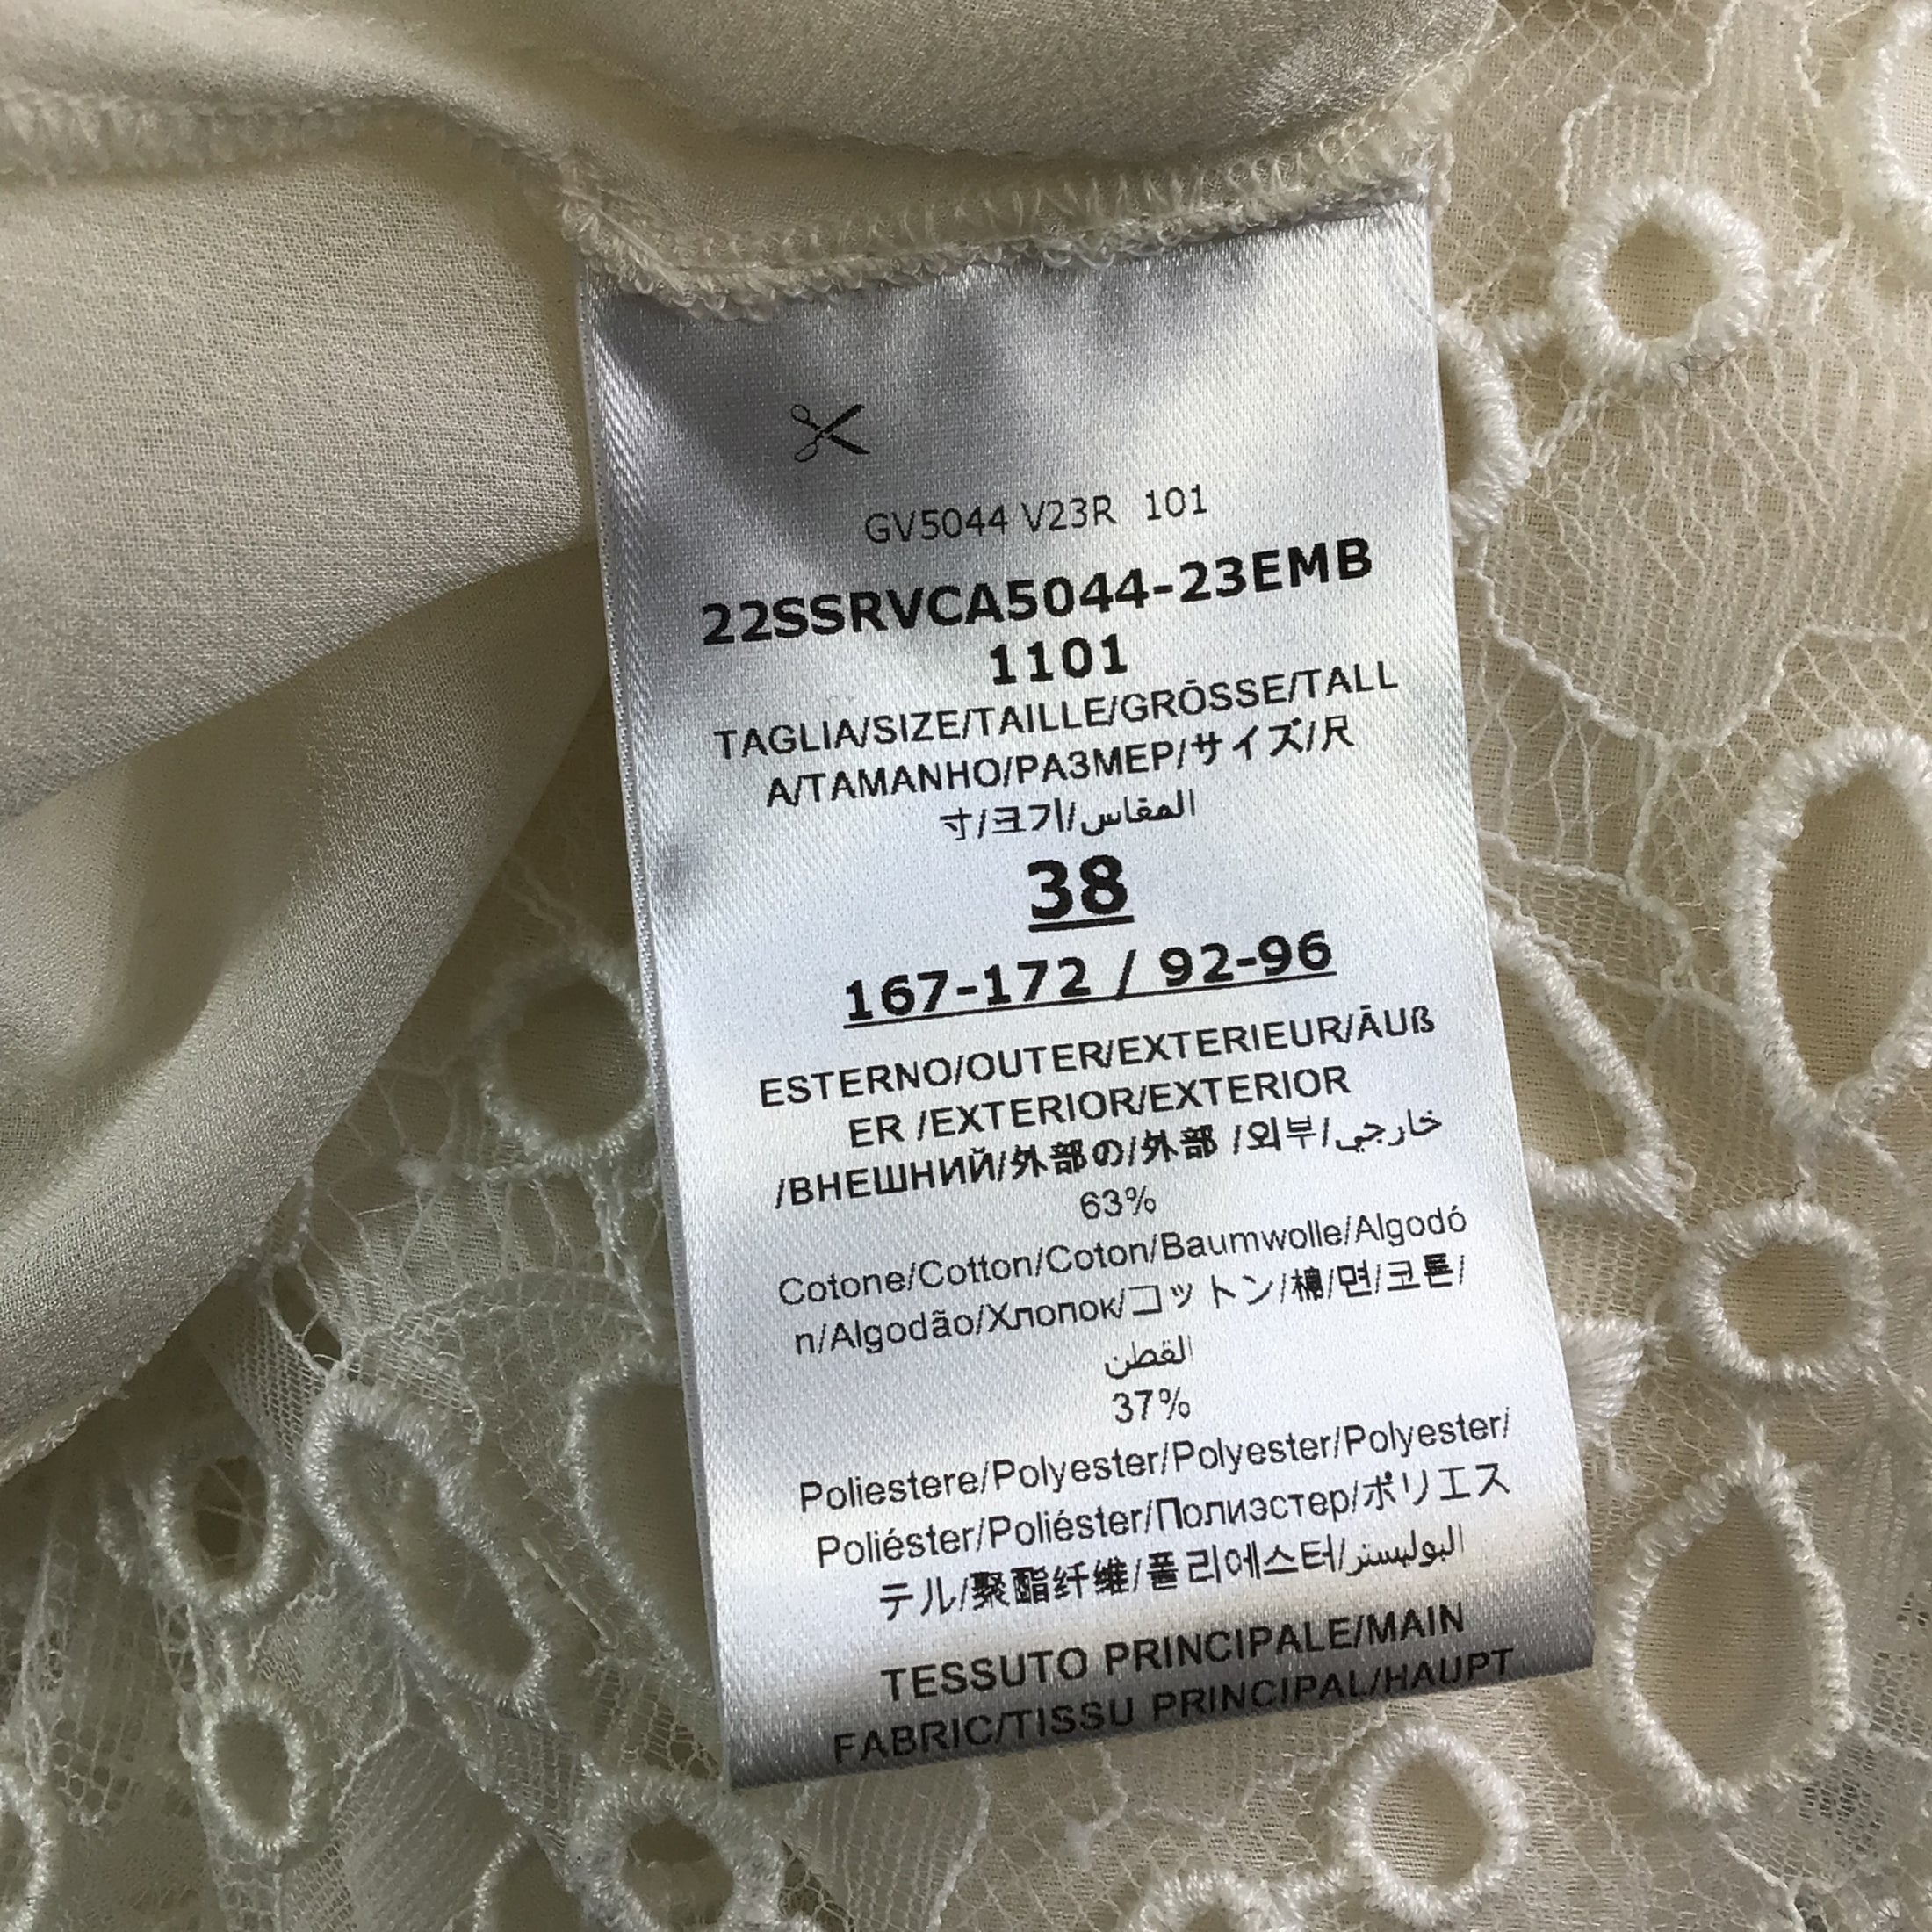 Giambattista Valli White Sleeveless Embroidered Lace Midi Dress